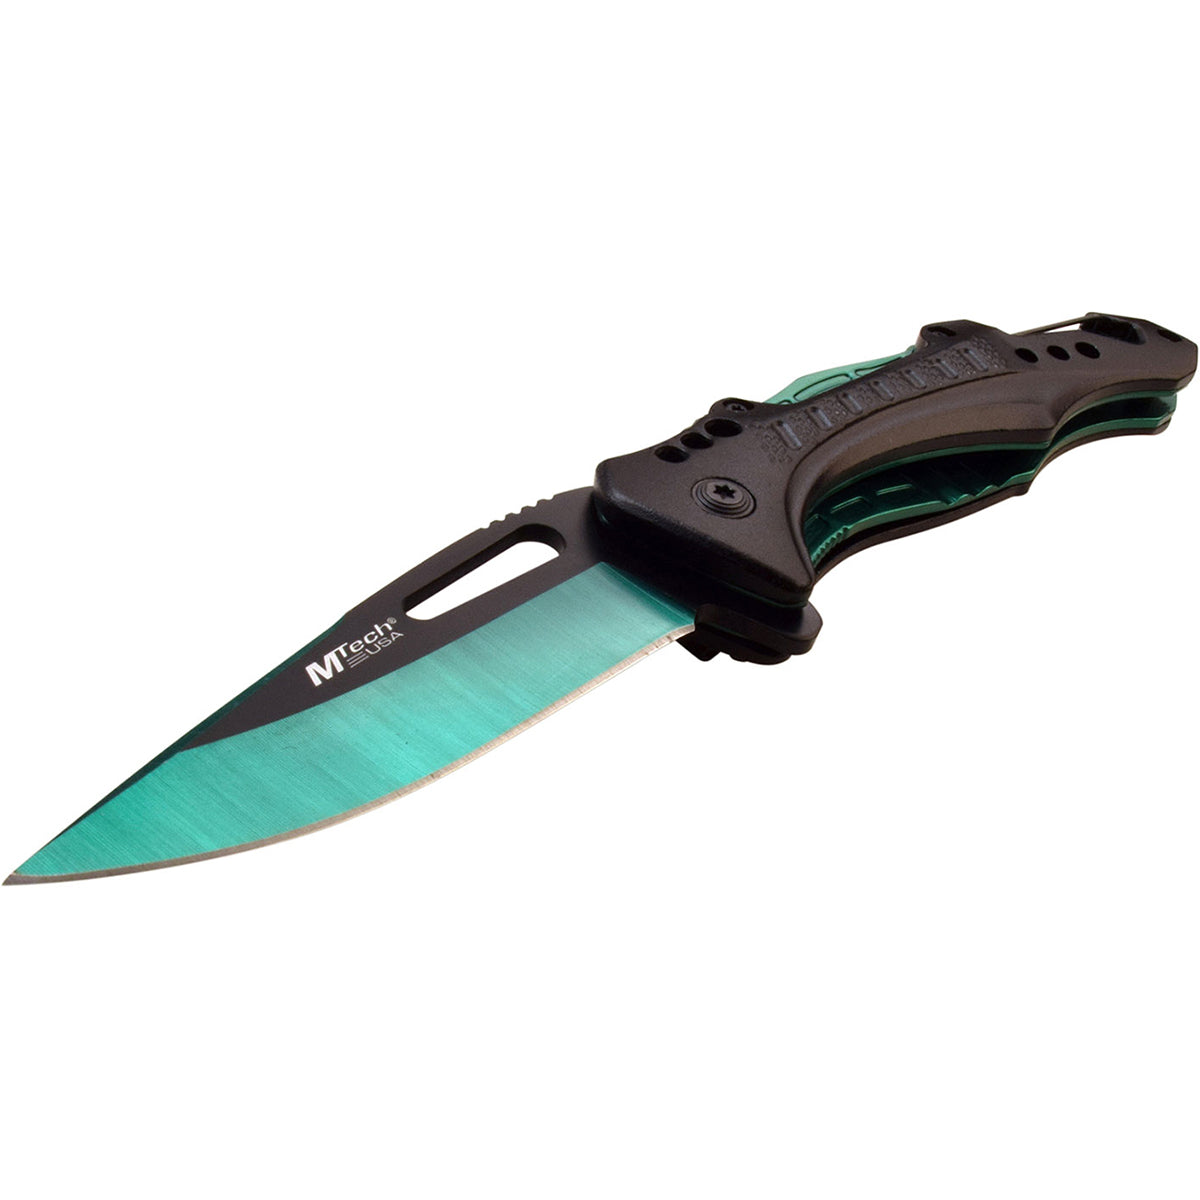 MTech USA Linerlock Spring Assisted Folding Knife, 3.5" Green Blade MT-A705G2-GN M-Tech